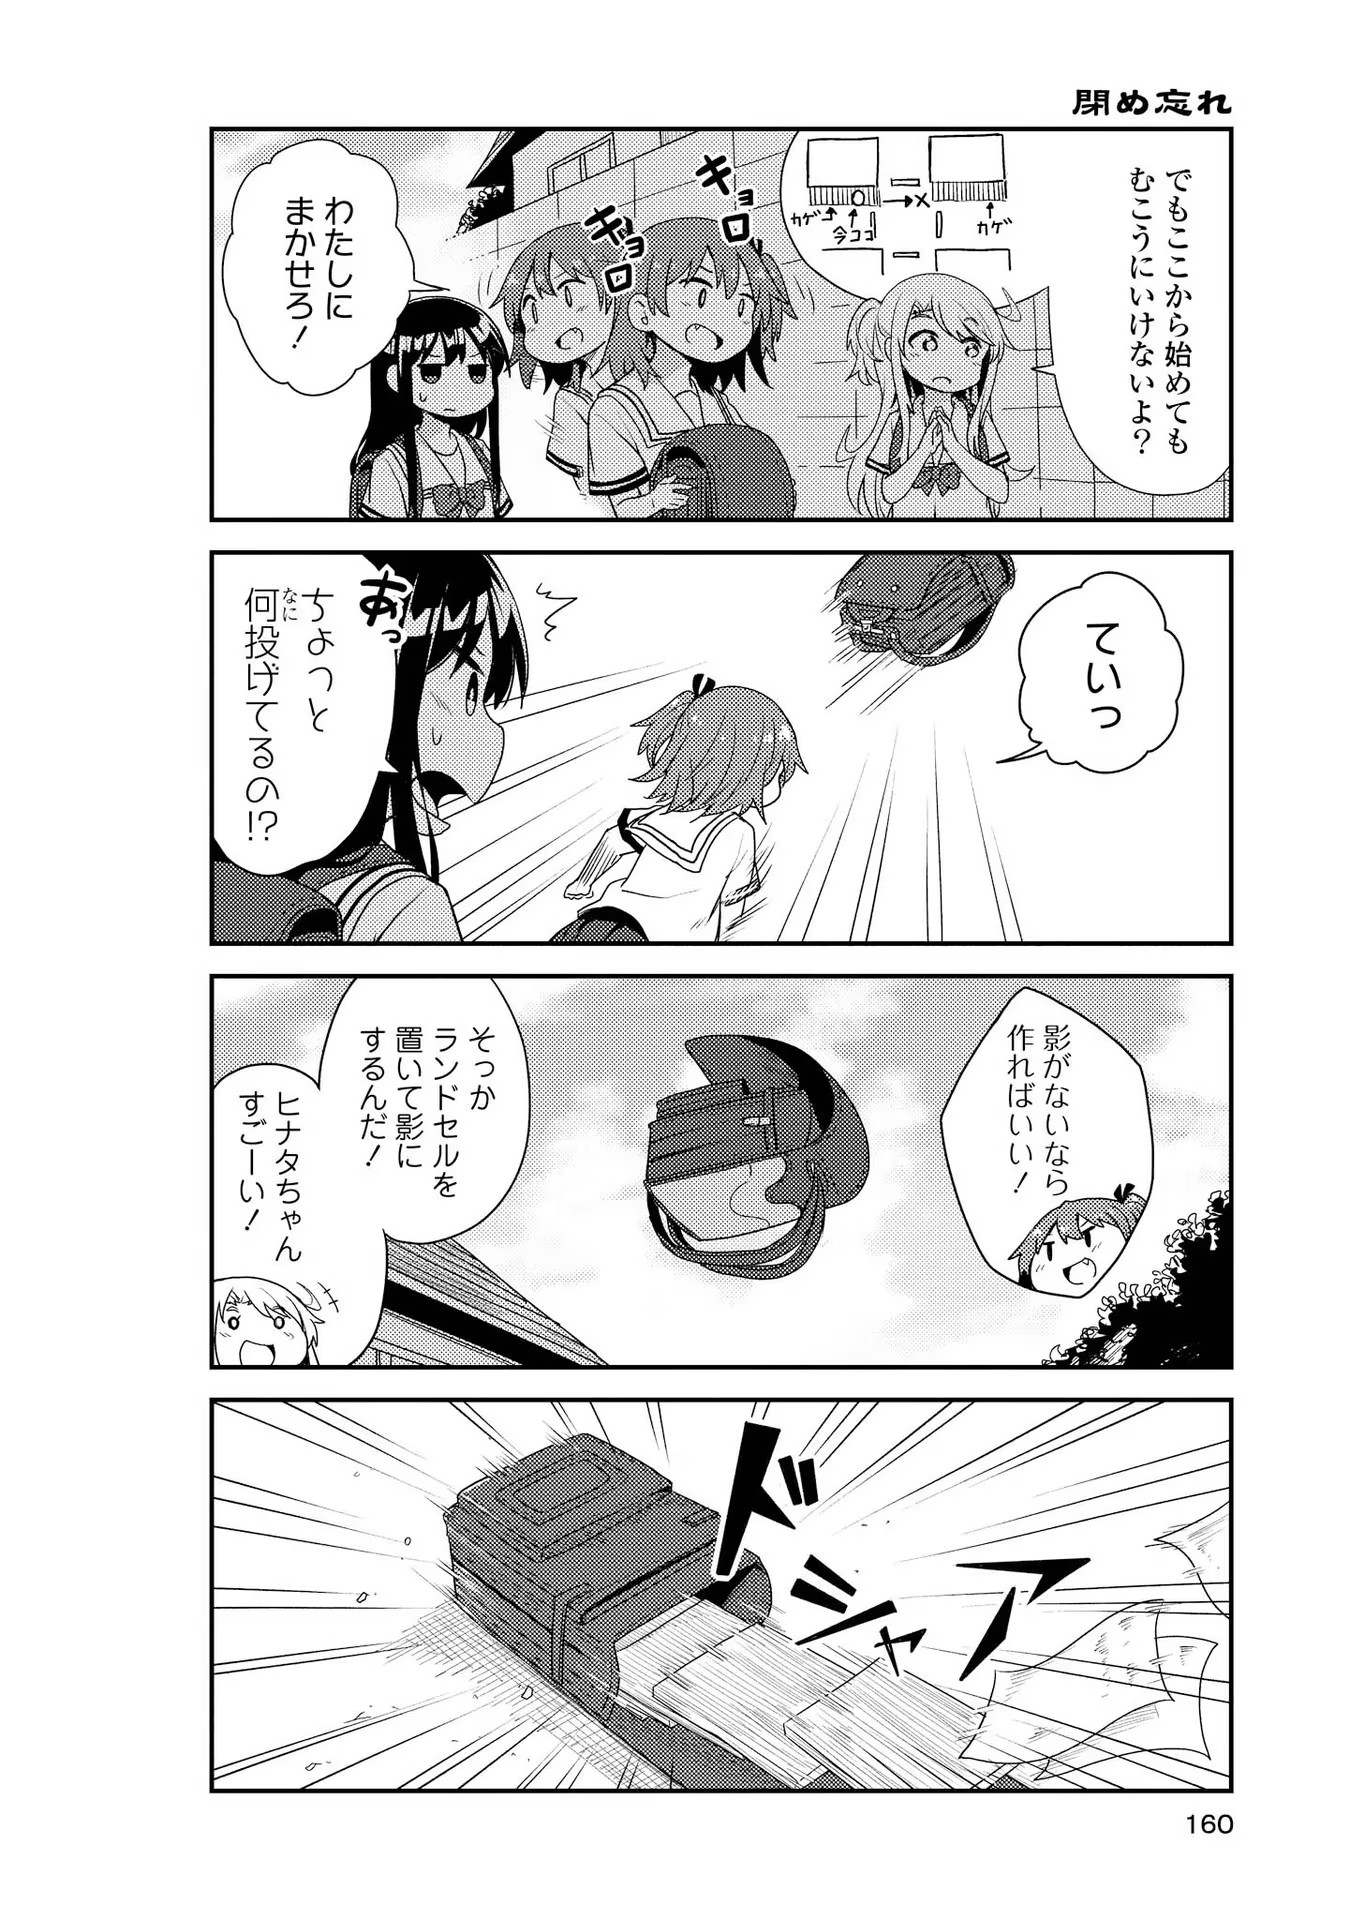 Watashi ni Tenshi ga Maiorita! - Chapter 10.5 - Page 4